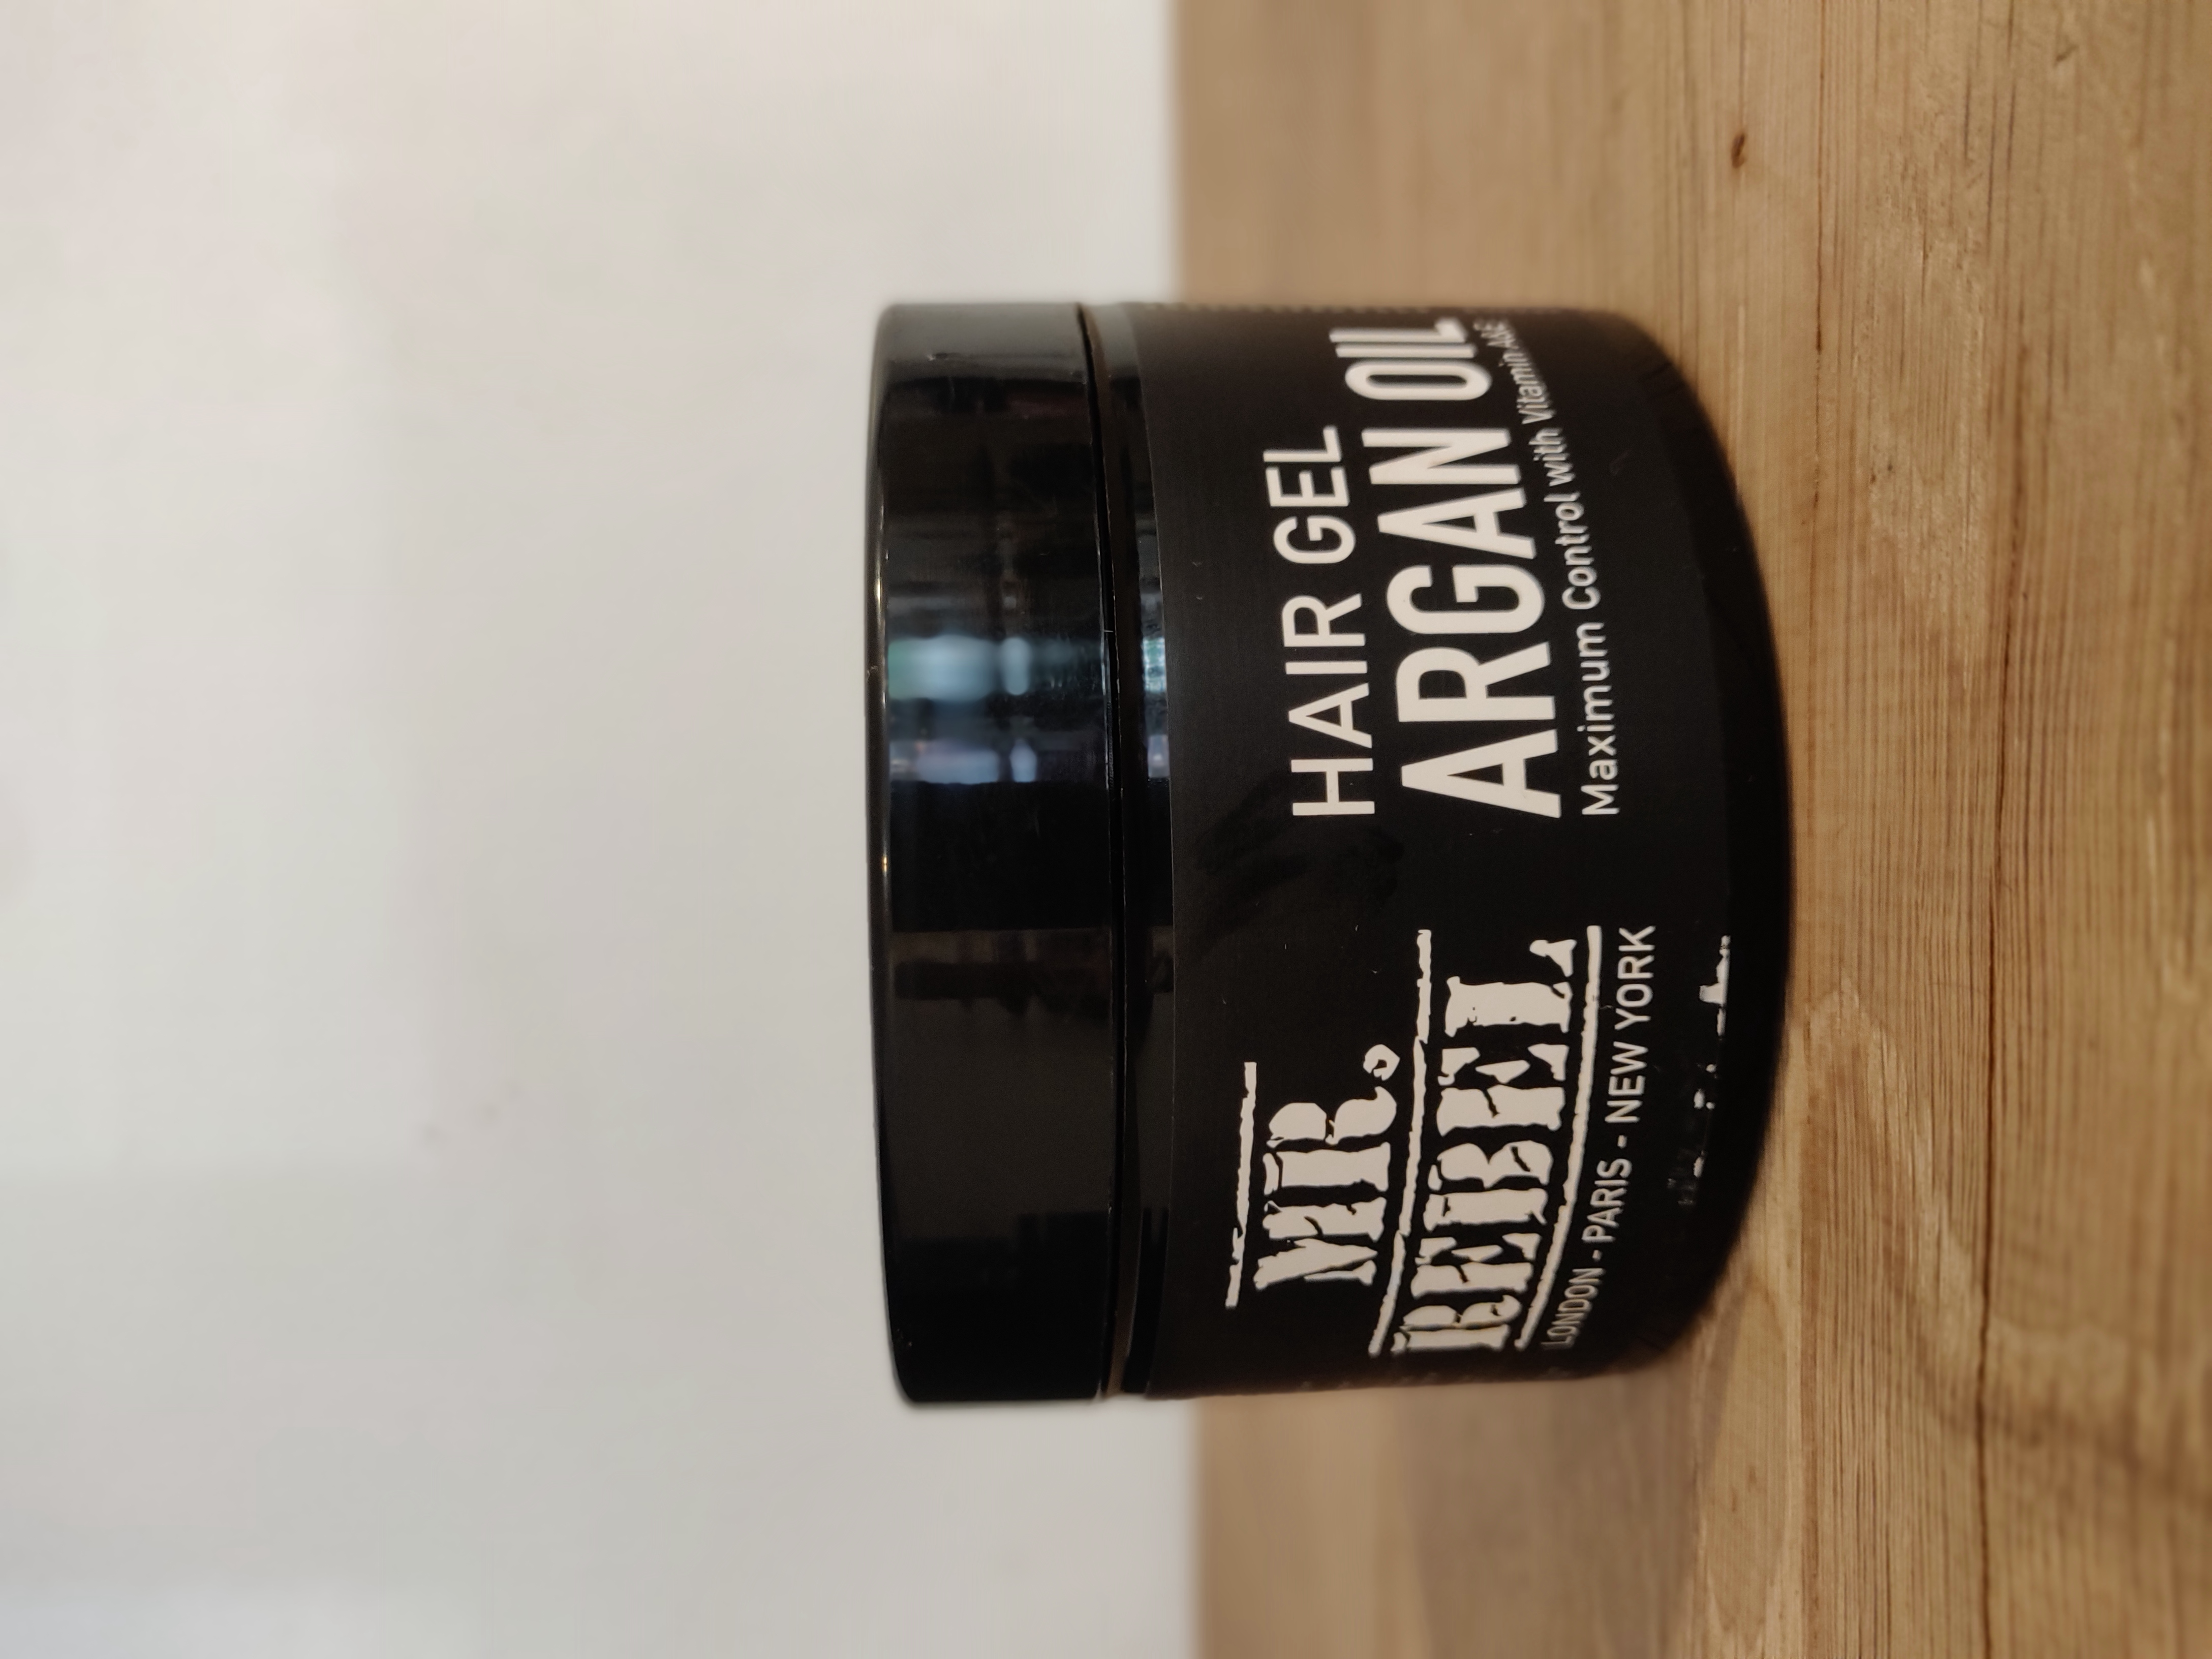 Hair gel argan oil